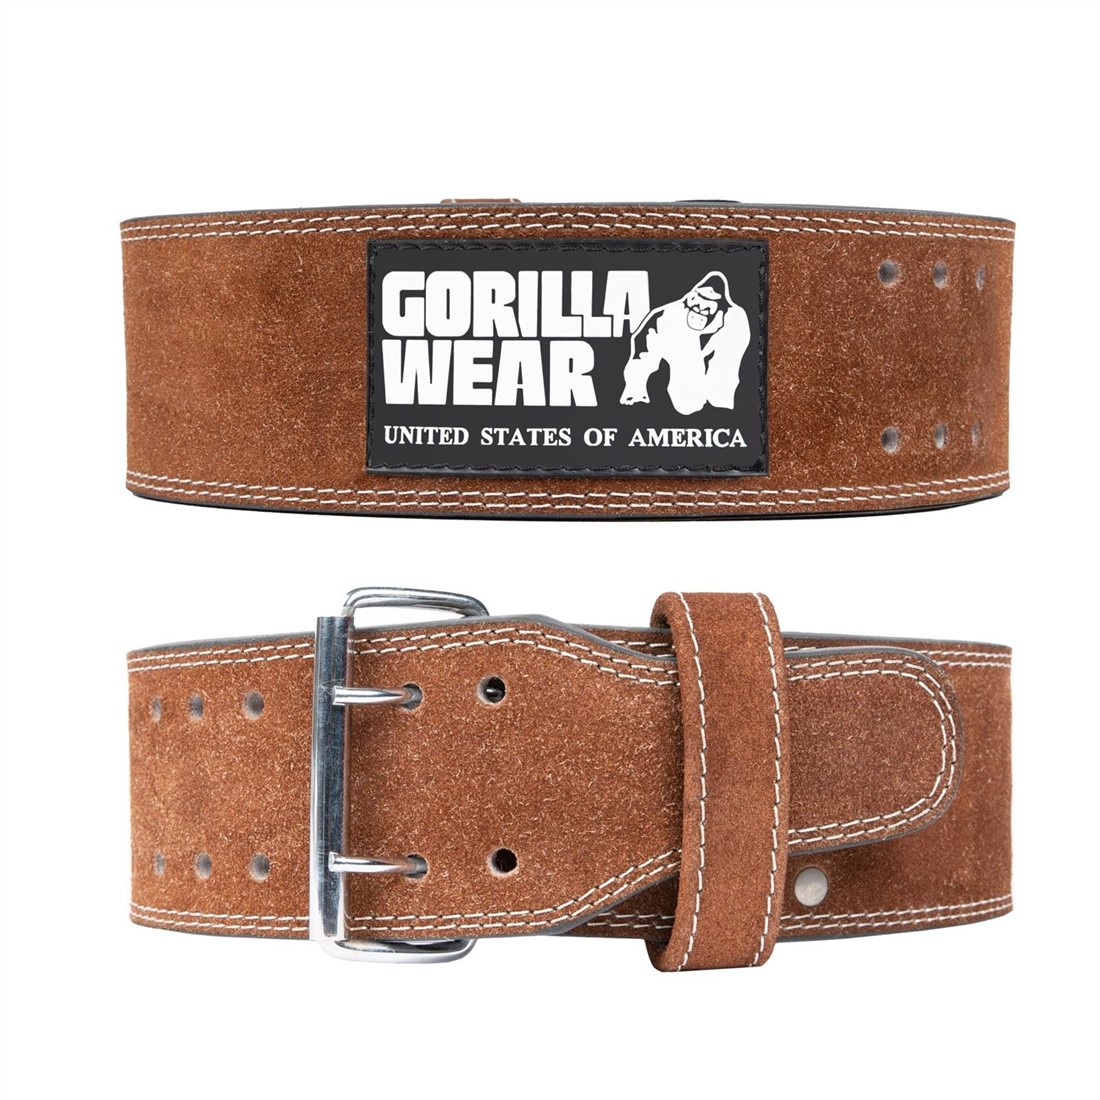 https://www.gorillawear.com/resize/99197129-leather-lifting-belt-4inch-brown_10645013834523.jpg/0/1100/True/gorilla-wear-4-inch-leather-lifting-belt-brown.jpg